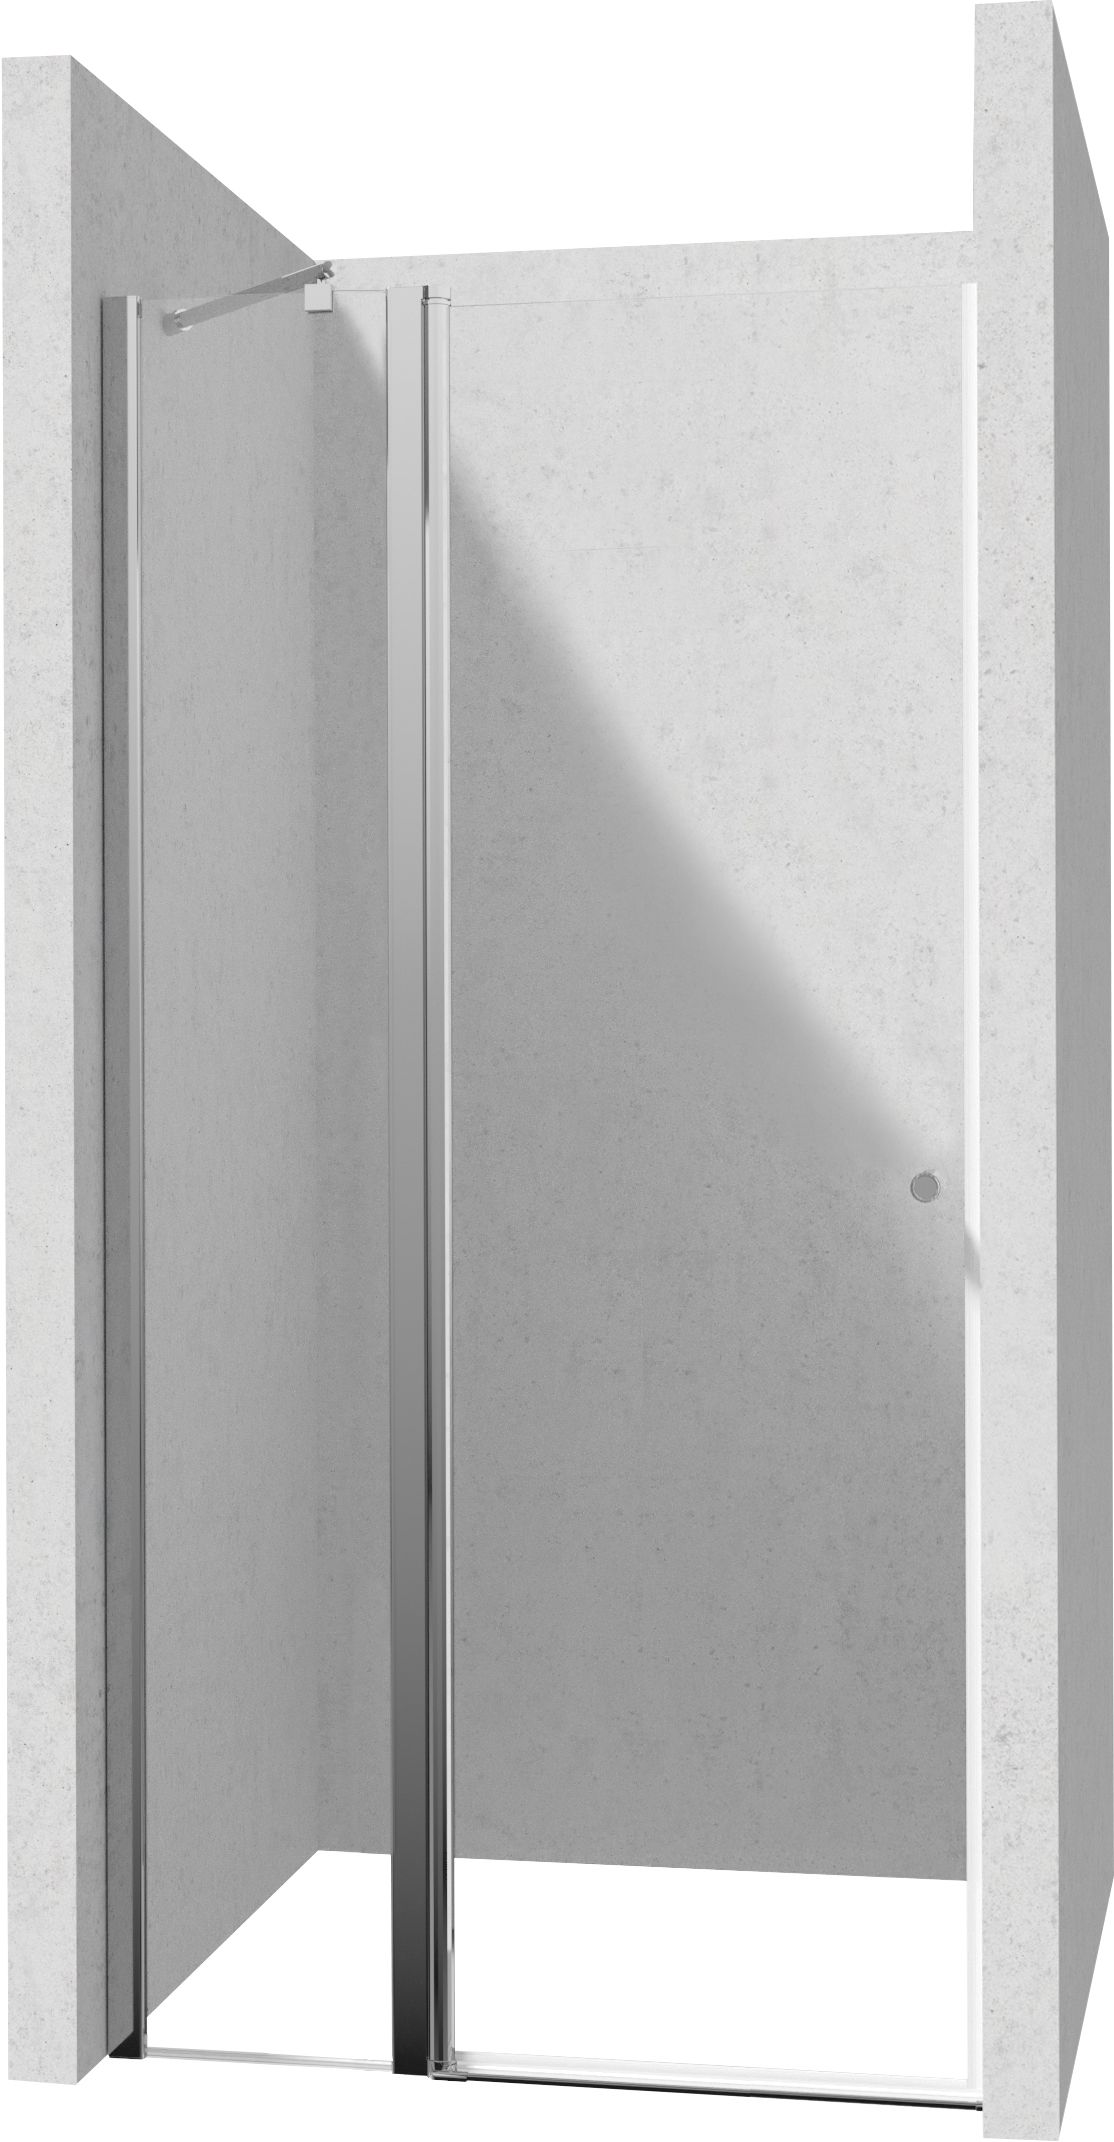 Drzwi prysznicowe 120 cm - uchylne - KTSU045P - Główne zdjęcie produktowe